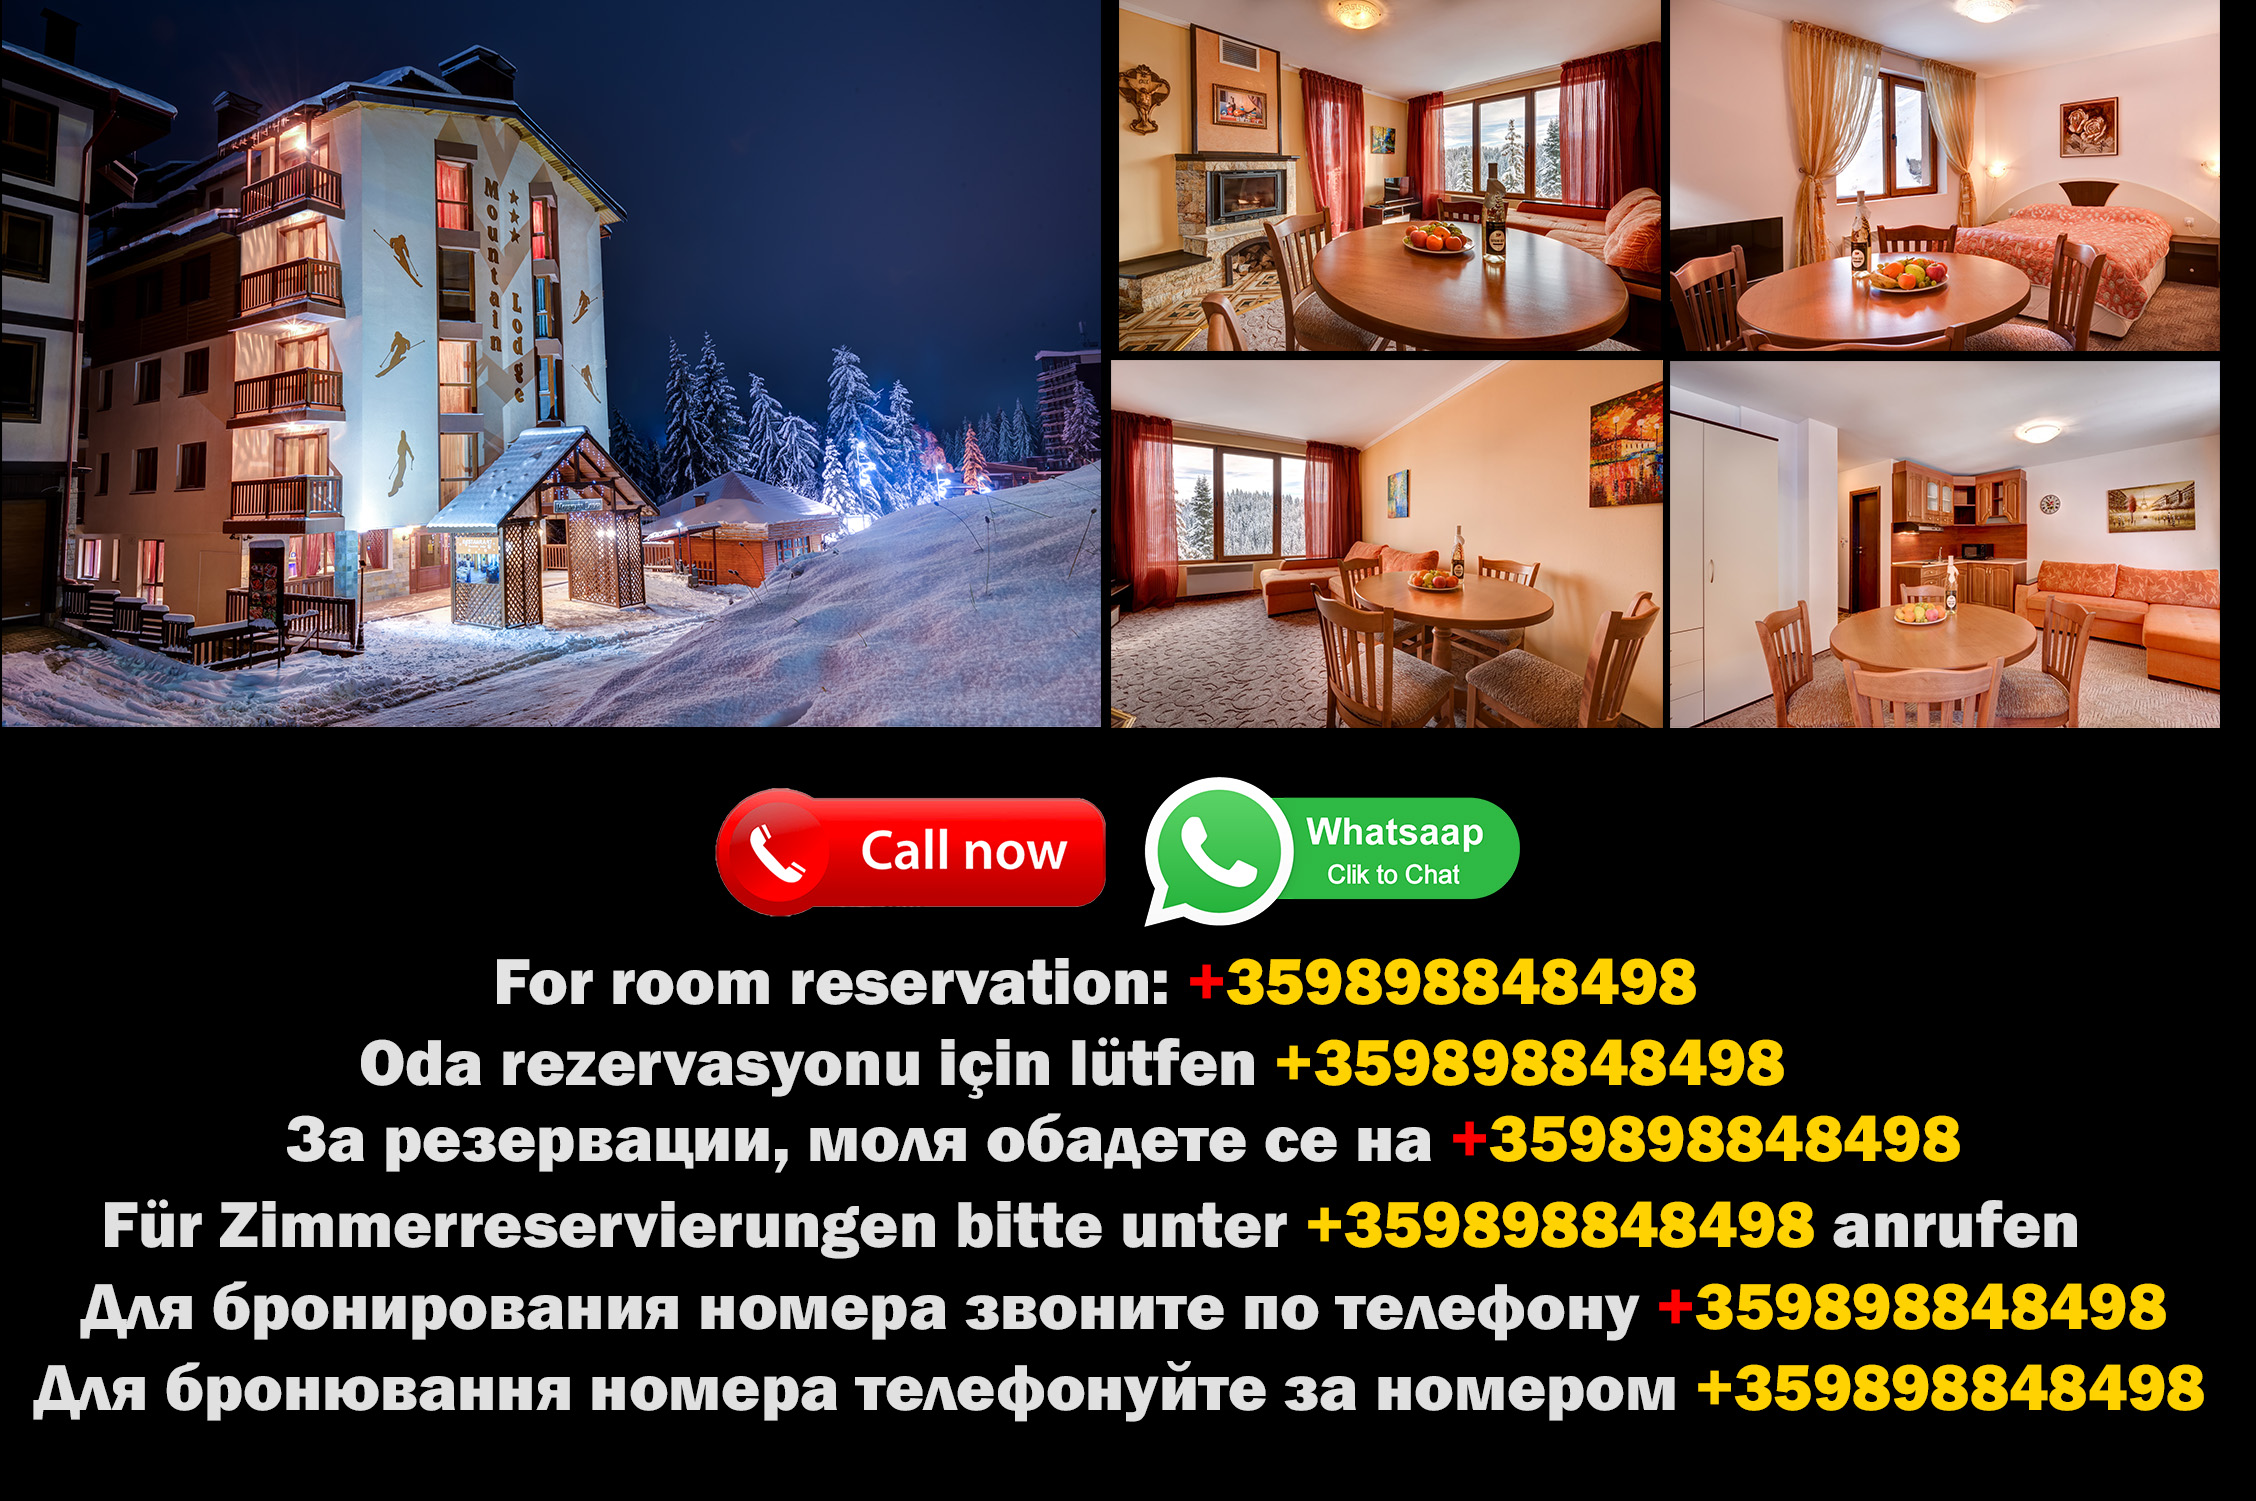 Découvrez le charme des Hôtels de Pamporovo à Pamporovo, situés en plein cœur du Mountain Lodge Hotel !